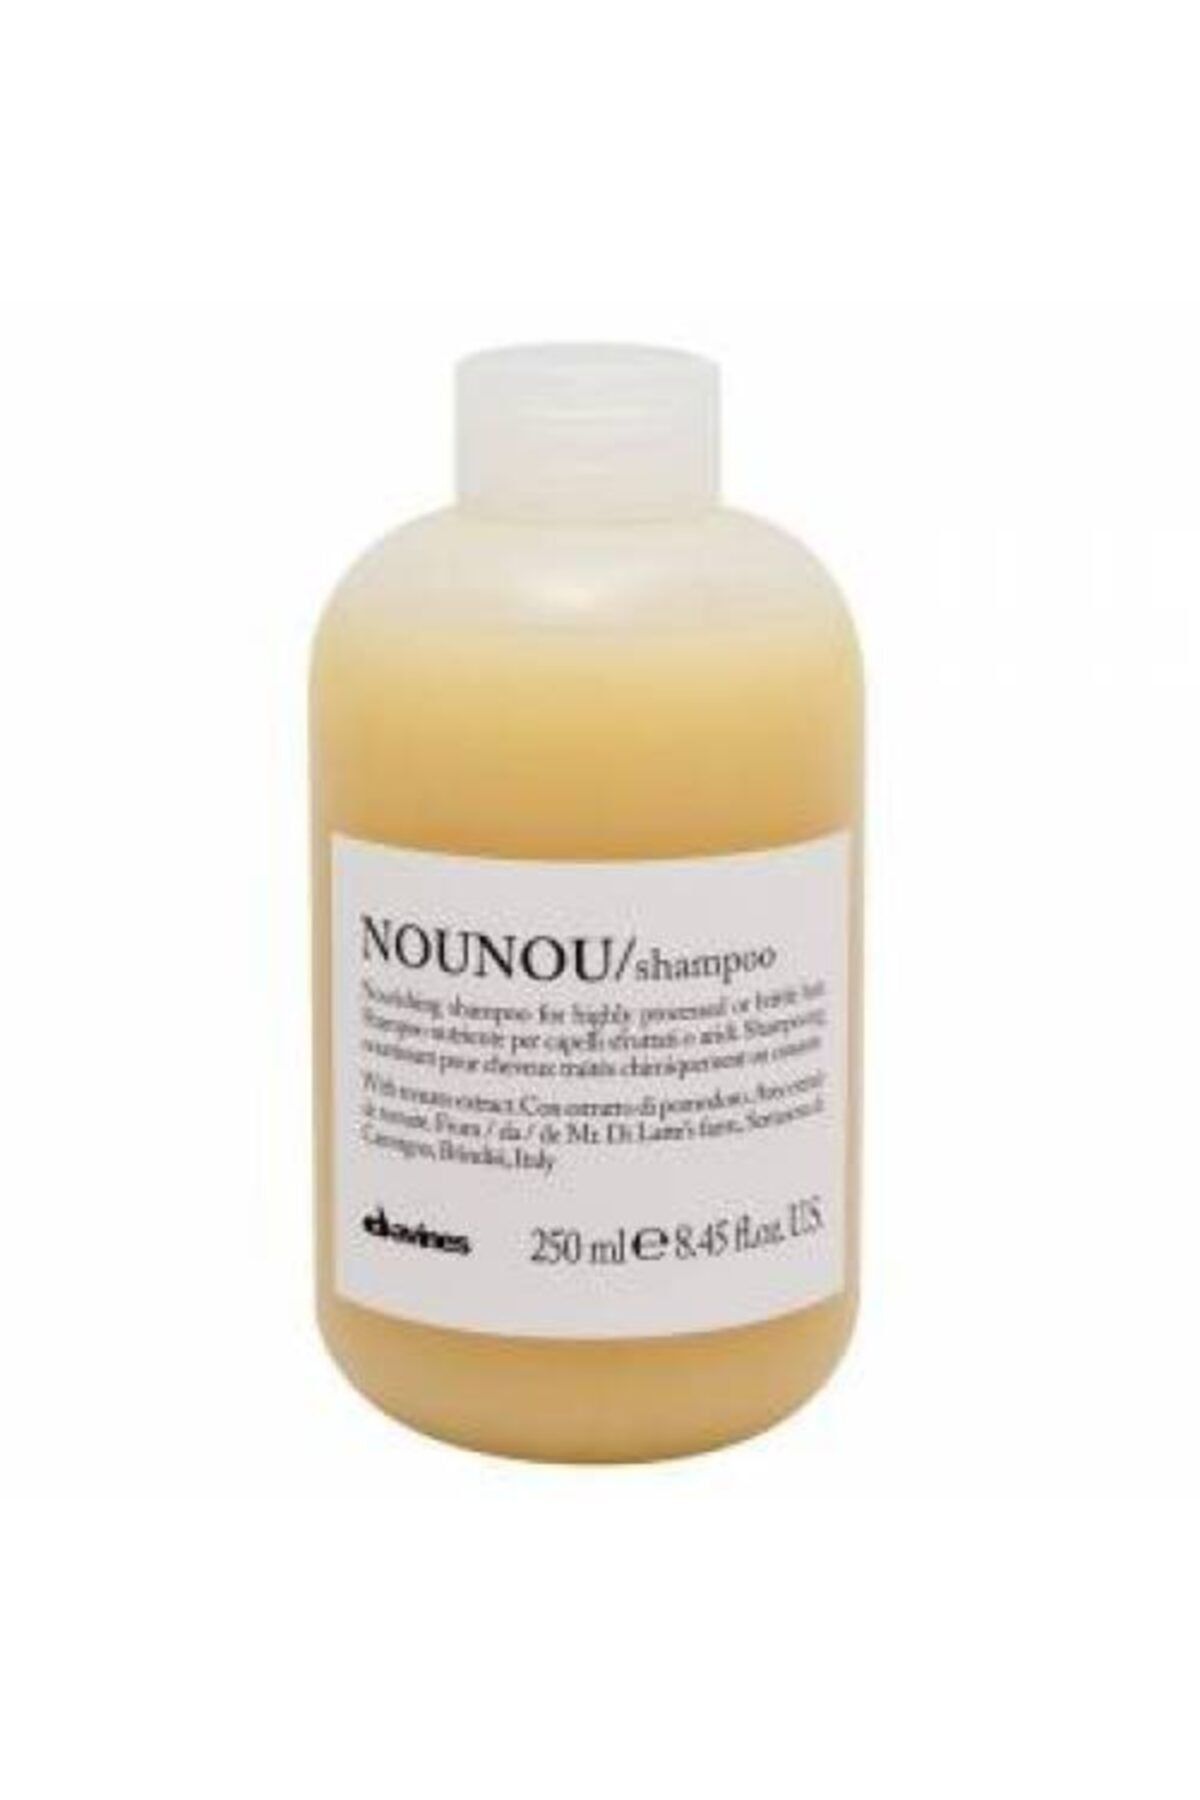 Davines Nounou Perma Düzleştirme Boya Röfle Gibi Kimyasal Işlem Görmüş Saçlar Için Şampuan 250 Ml